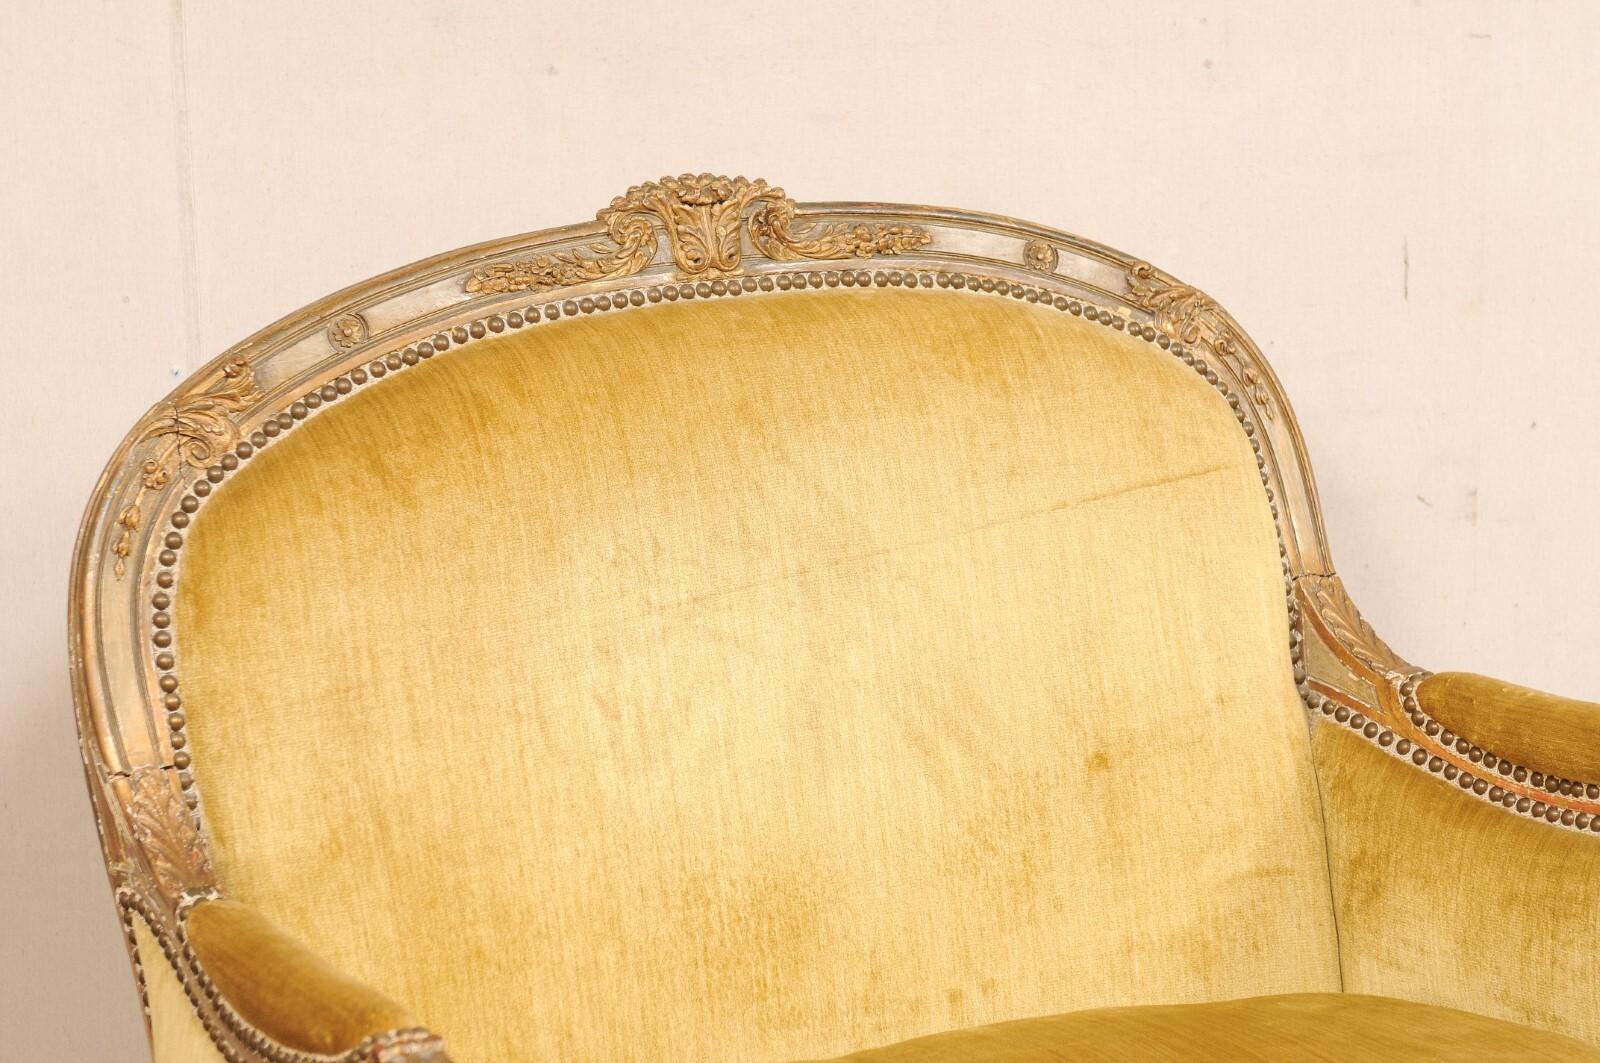 Eine französische Marquise im Louis-XVI-Stil mit zugeschnittenem Samt und Nagelkopfverzierung. Dieses Vintage-Sofa aus Frankreich hat eine sanft gewölbte Rückenlehne und eine geschwungene Form an der Vorderseite. Es zeigt das dekorative Vokabular